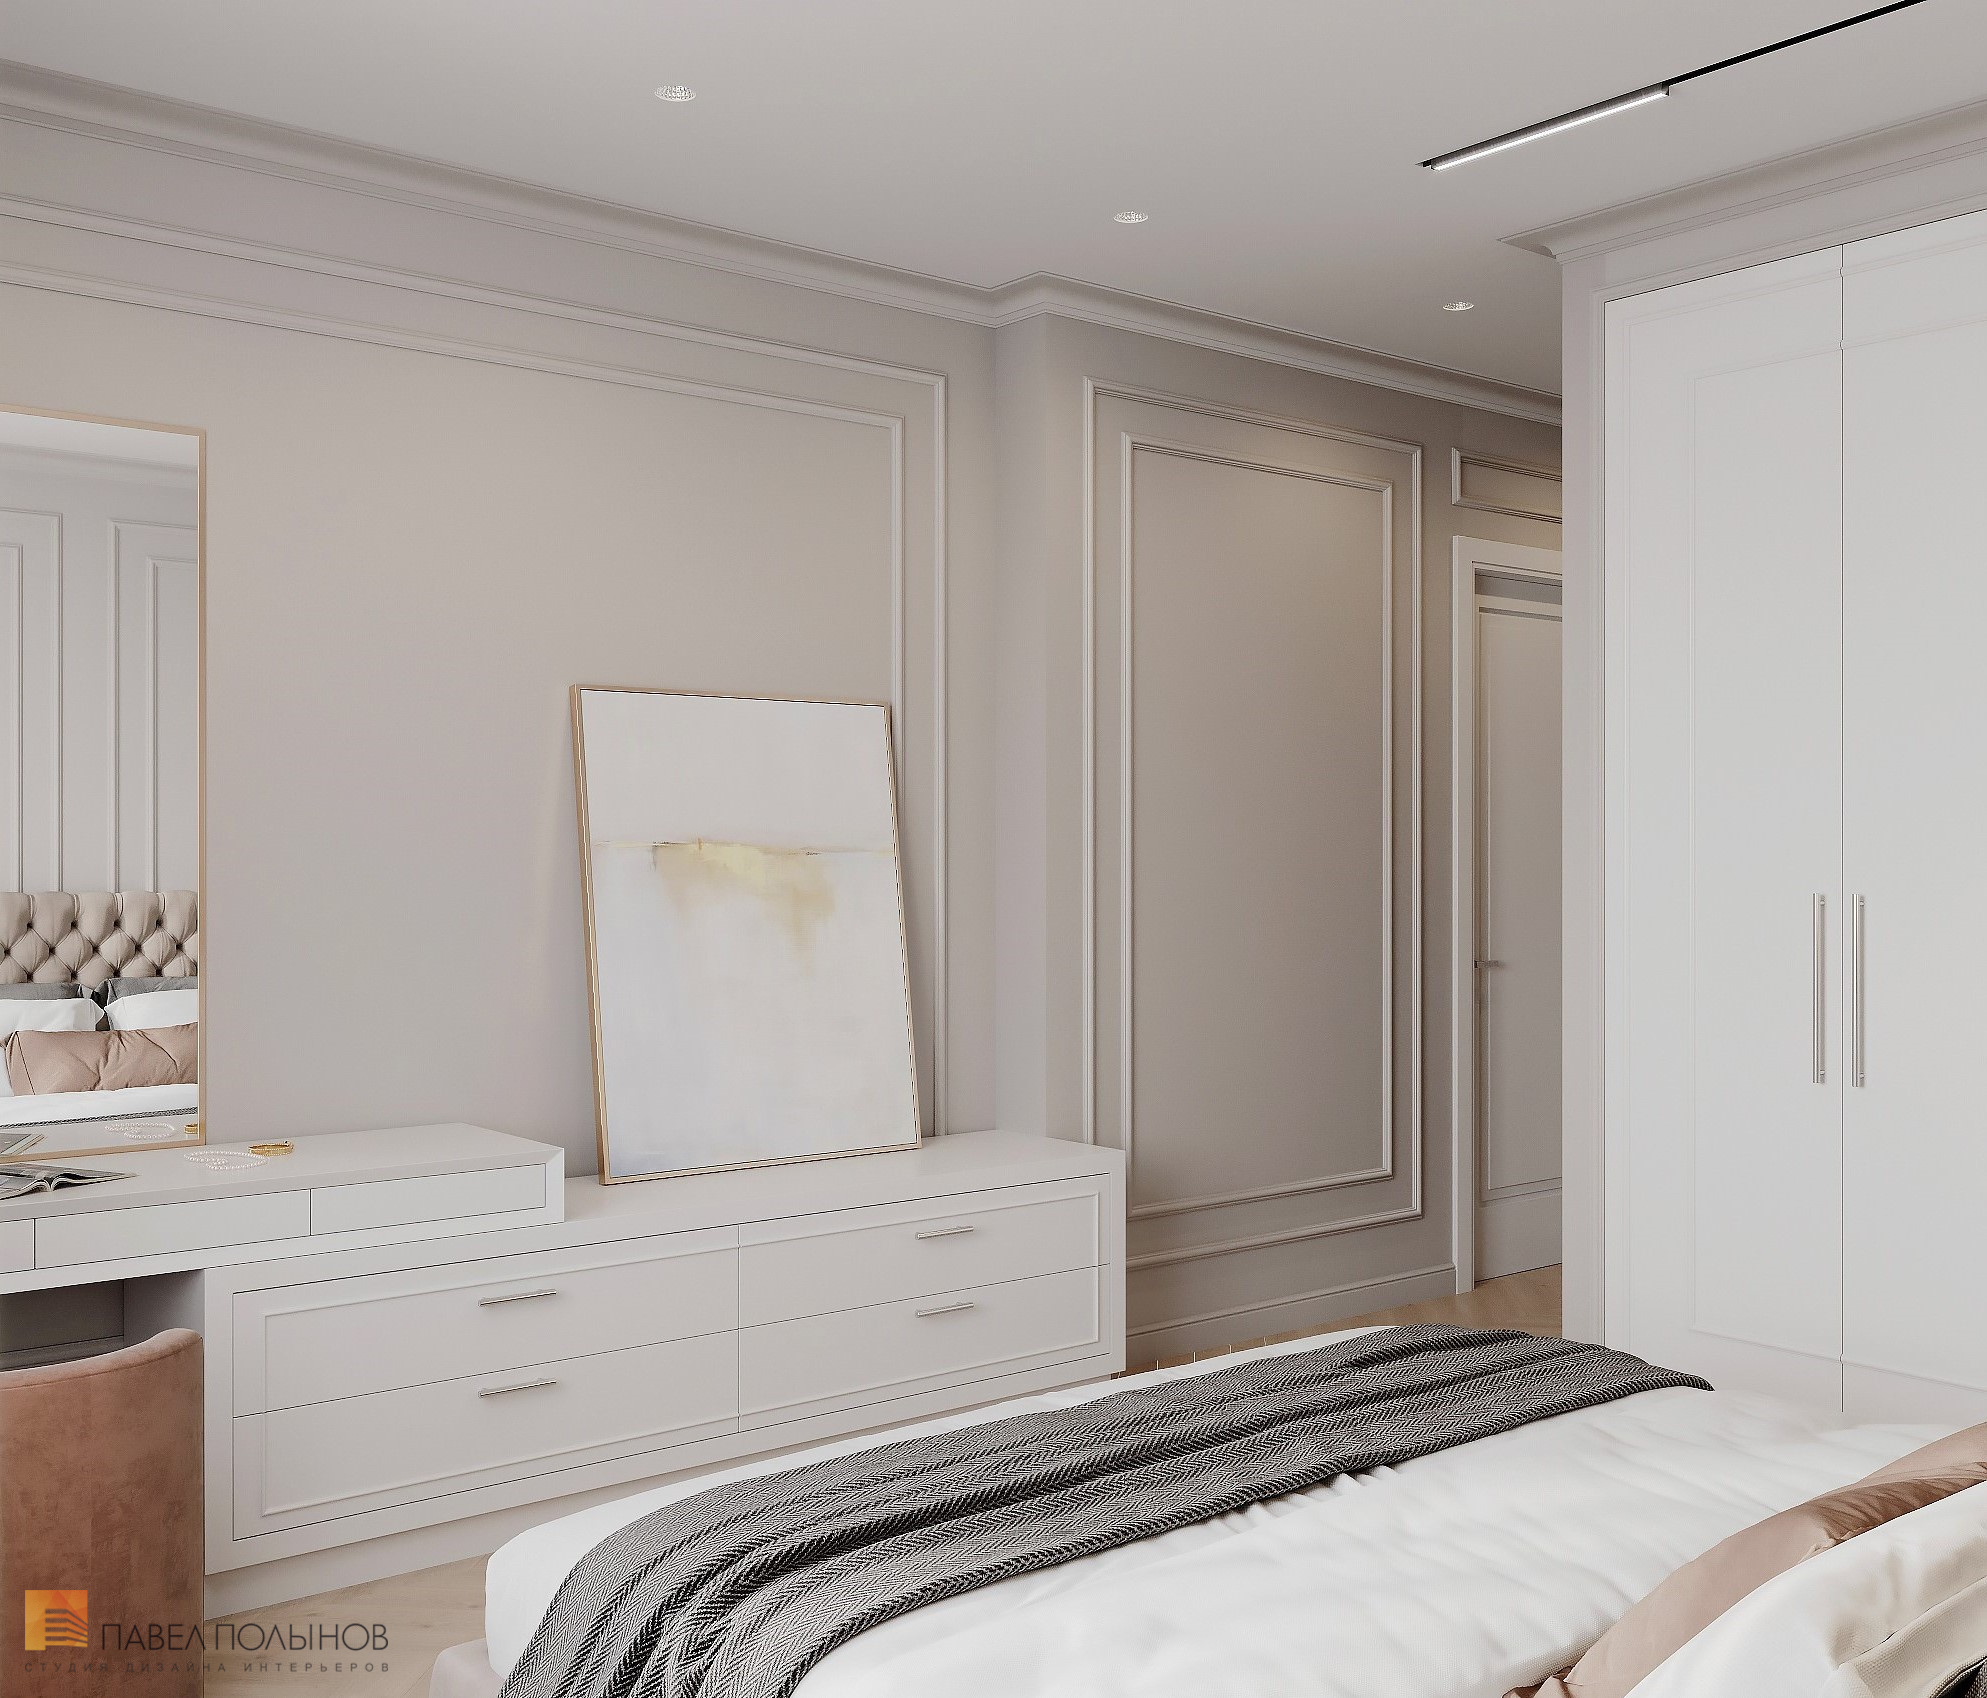 Фото дизайн интерьера спальни из проекта «Квартира в стиле неоклассики, ЖК «Алые Паруса», 124 кв.м.»